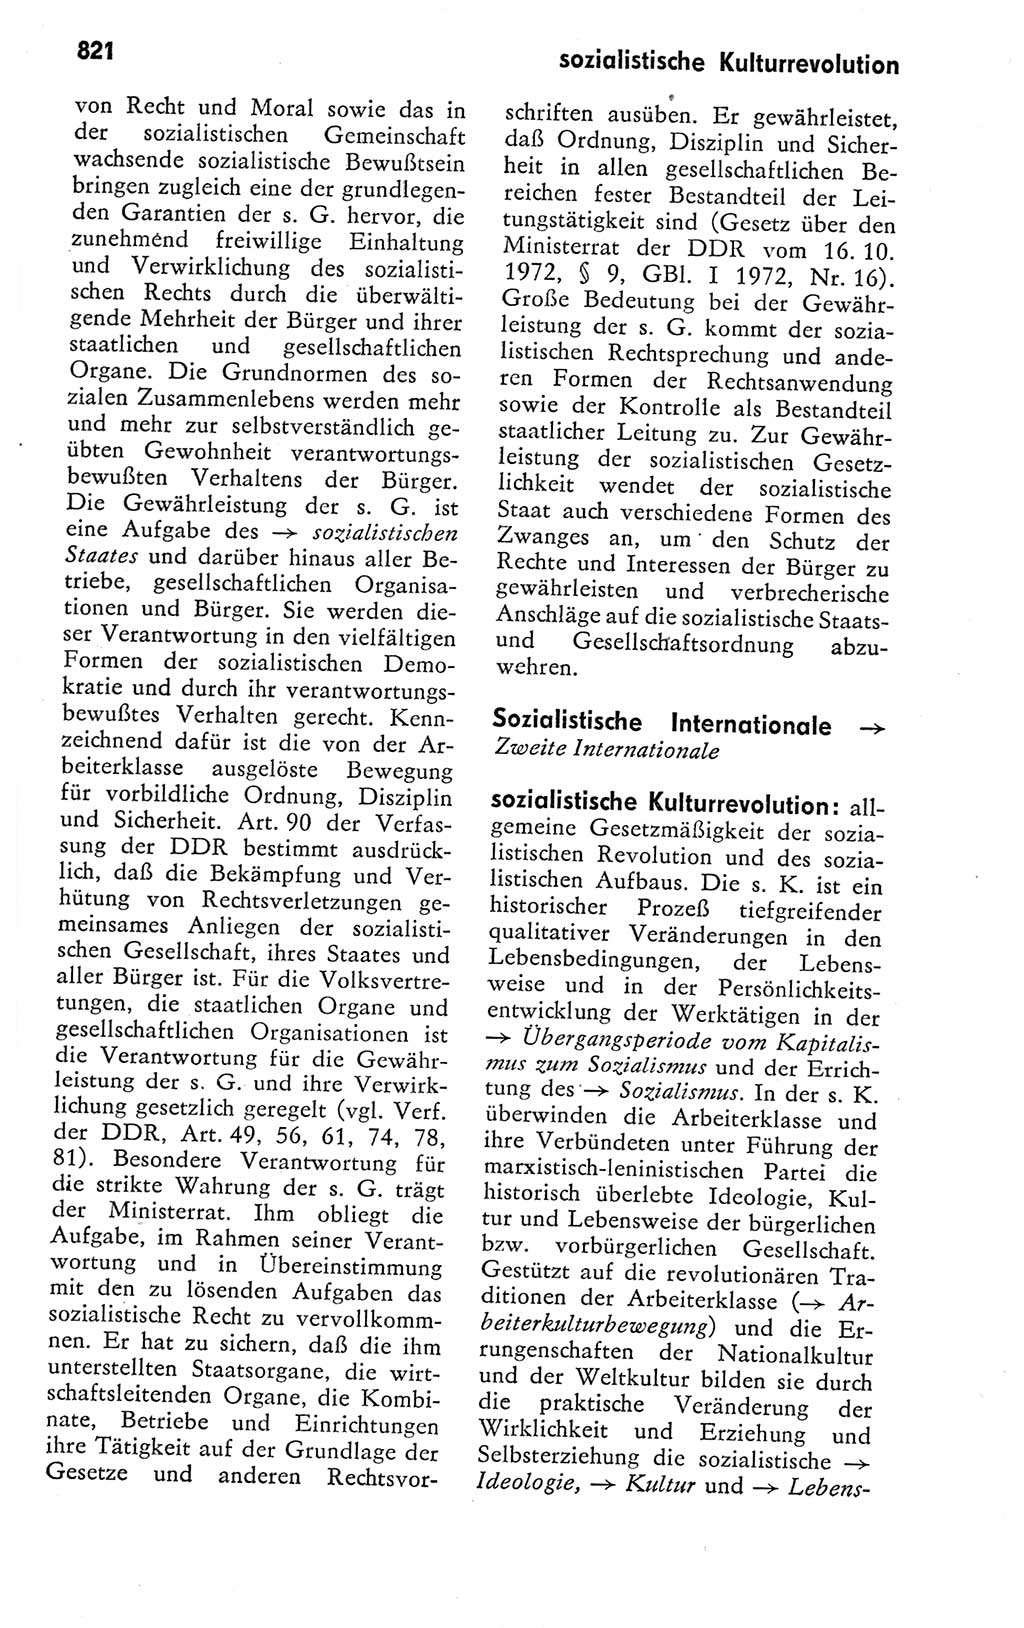 Kleines politisches Wörterbuch [Deutsche Demokratische Republik (DDR)] 1978, Seite 821 (Kl. pol. Wb. DDR 1978, S. 821)